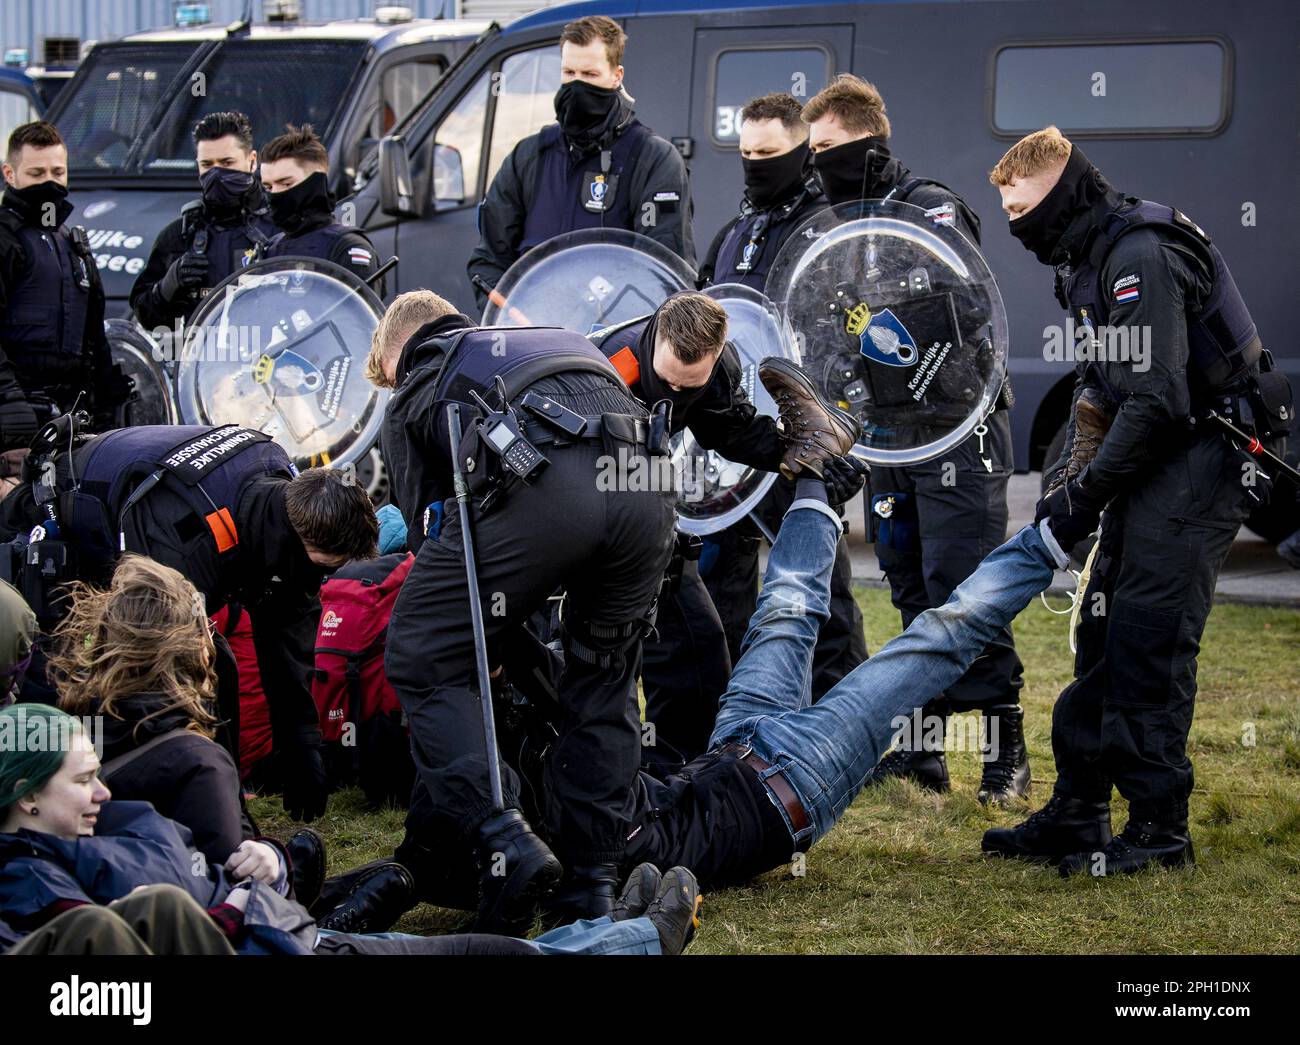 EINDHOVEN - Ein Klimaaktivist aus der Ausrottung Rebellion wird während einer Aktion am Flughafen Eindhoven verhaftet. Die Aktivisten sind sehr besorgt über den Schaden, den der Luftverkehr dem Klima verursacht. ANP SEM VAN DER WAL niederlande raus - belgien raus Stockfoto